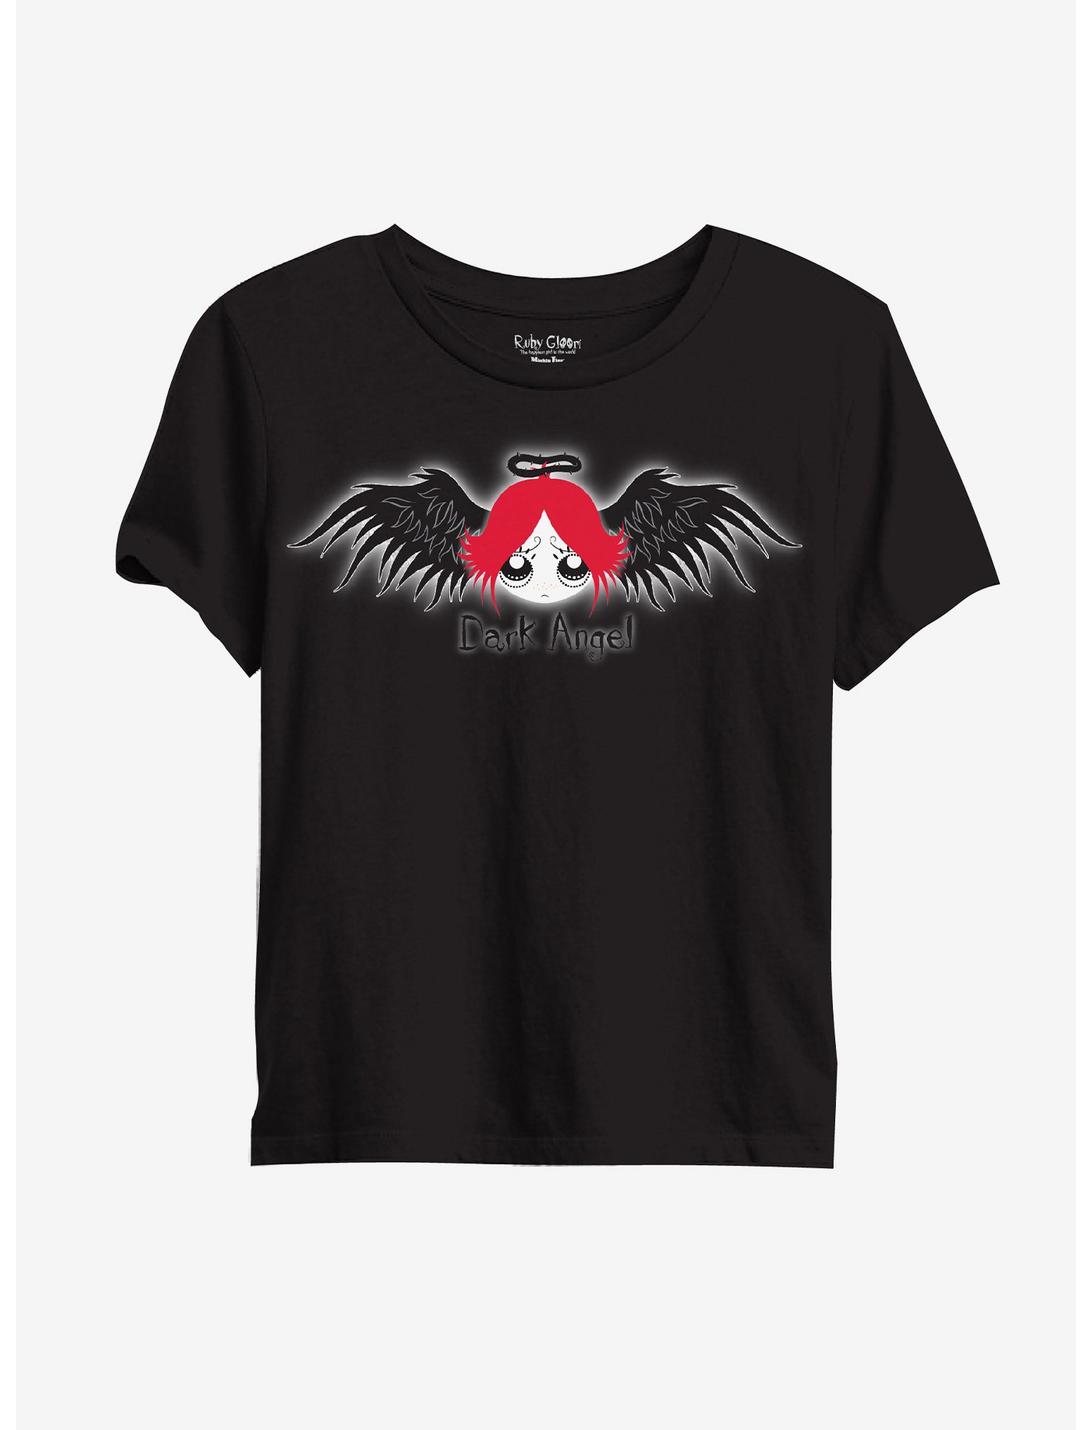 Ruby Gloom Dark Angel Boyfriend Fit Girls T-Shirt, MULTI, hi-res